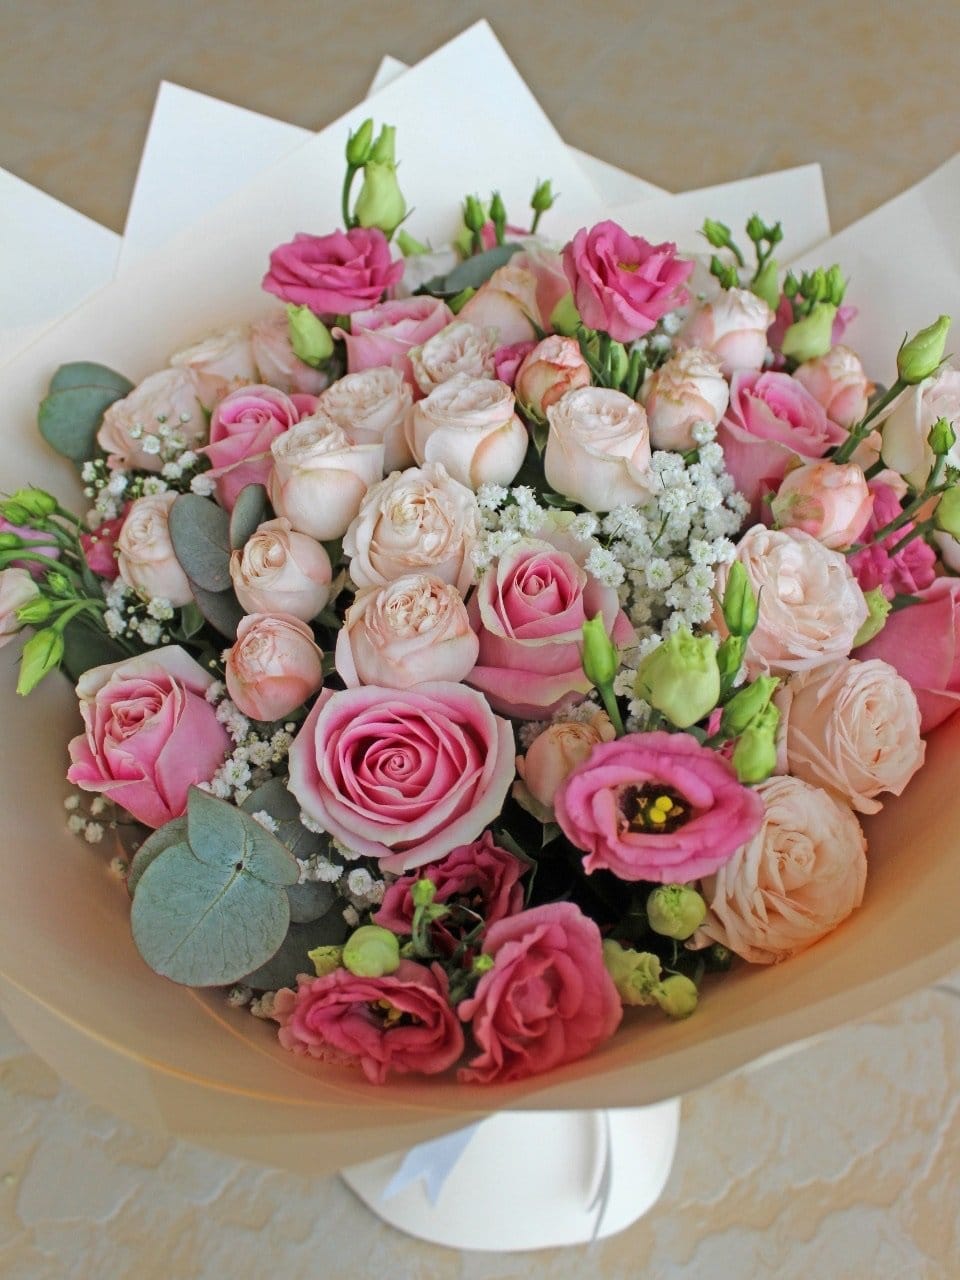 Vogue Flower Bouquet & Large Chocolates Gift Set - Harrys Flowers London